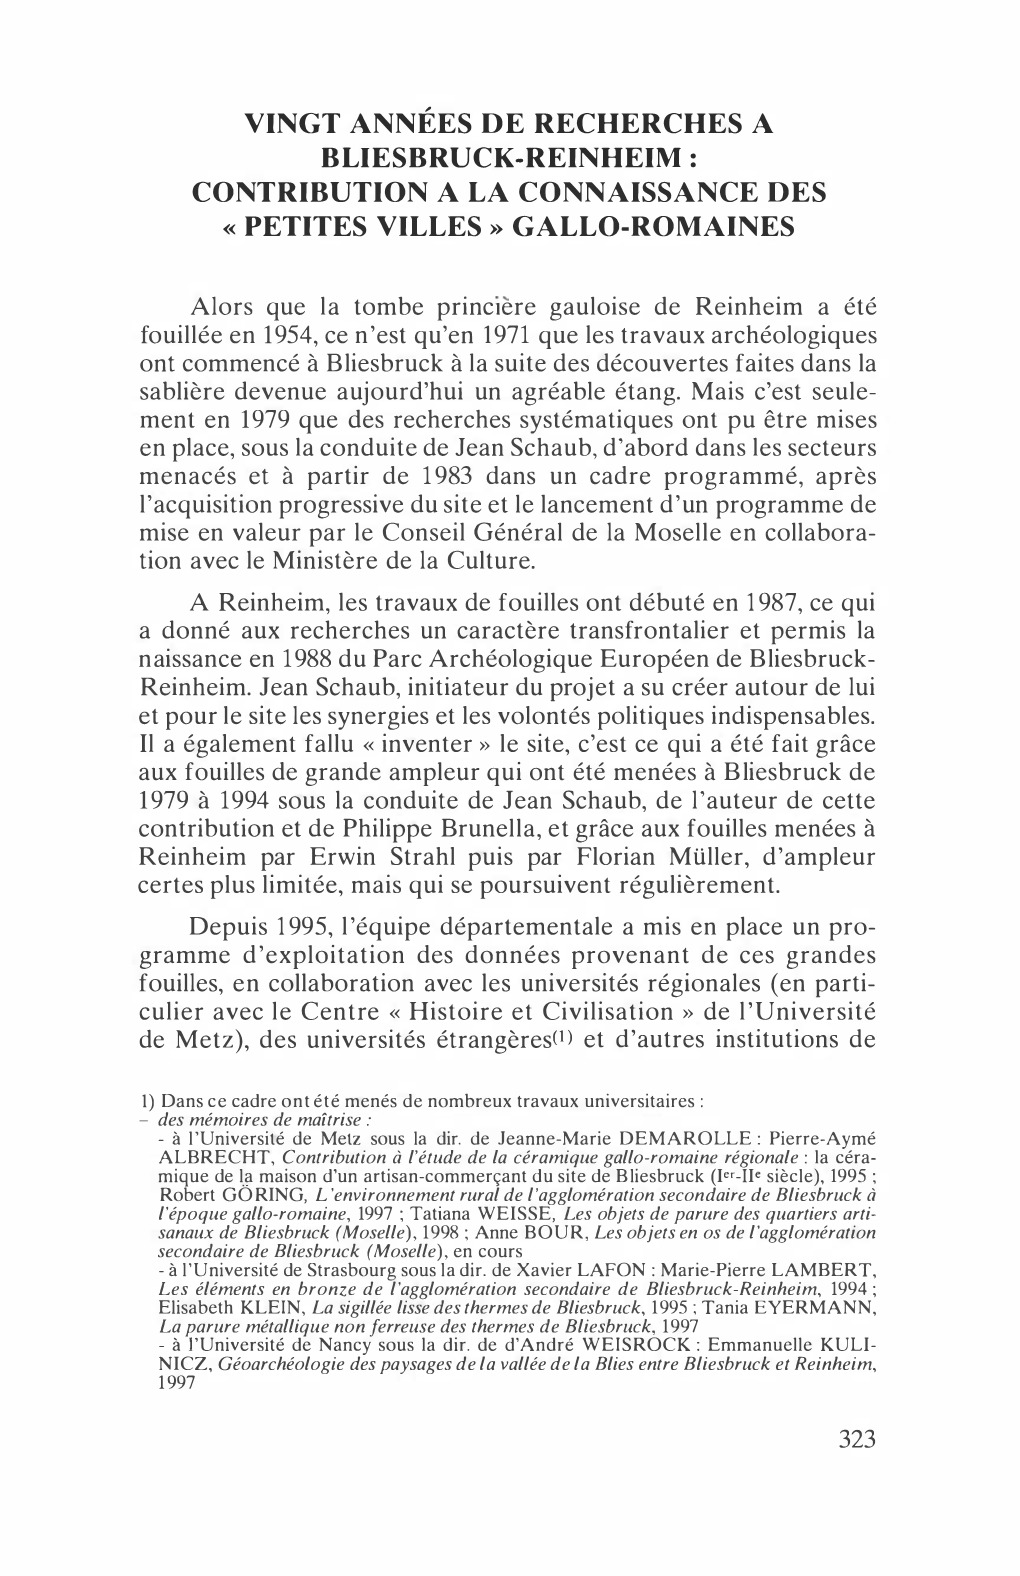 Vingt Années De Recherches a Bliesbruck-Reinheim : Contribution a La Connaissance Des Petites Villes » Gallo-Romaines «